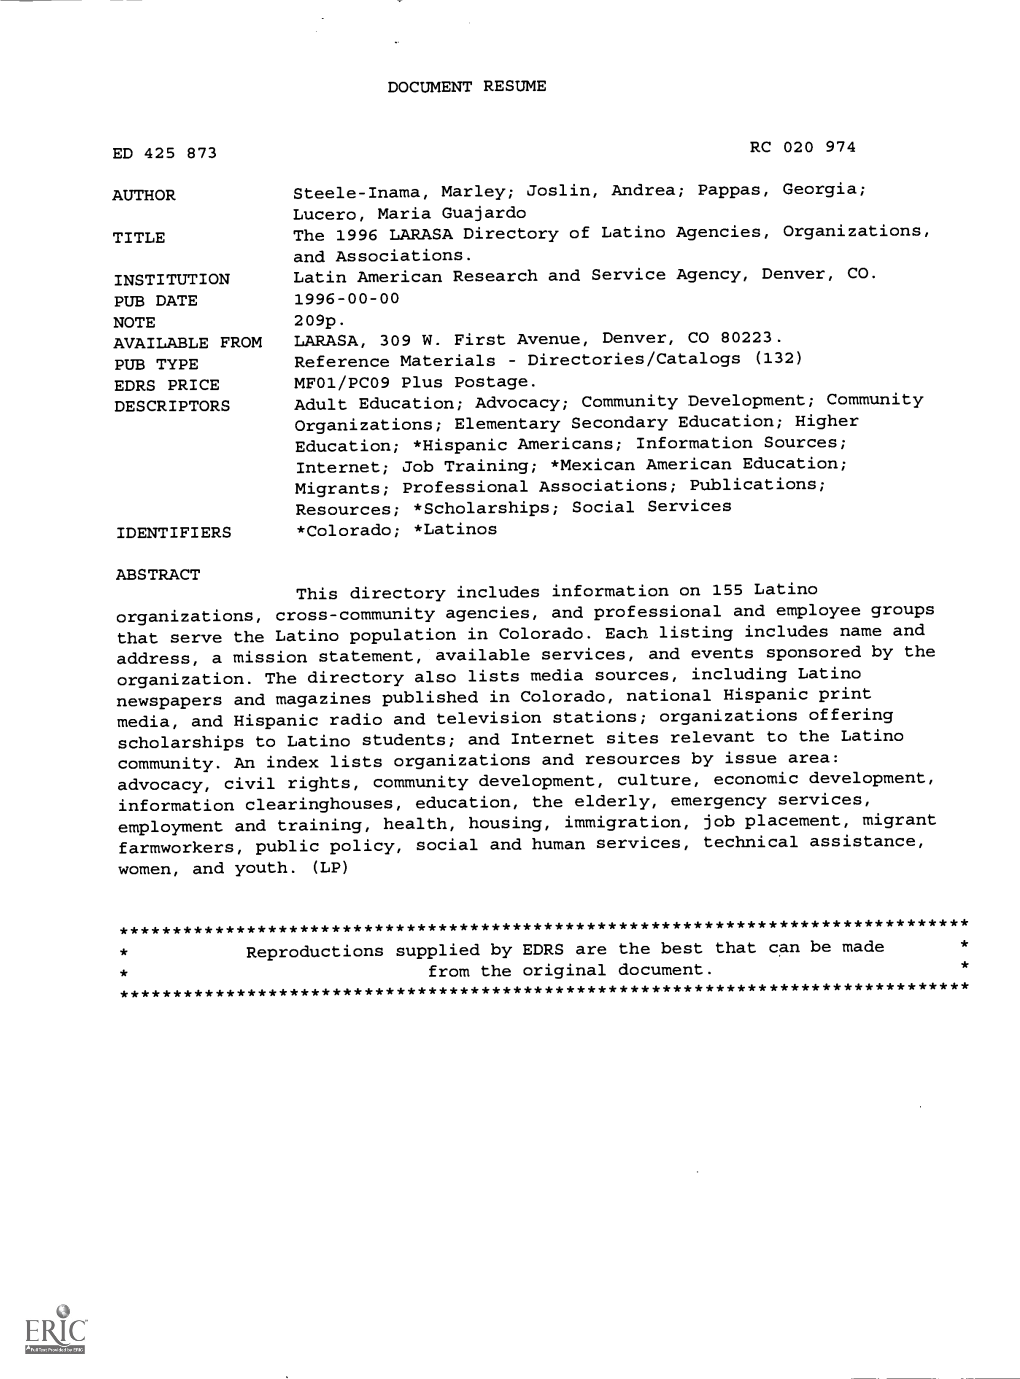 The 1996 LARASA Directory of Latino Agencies, Organizations, and Associations